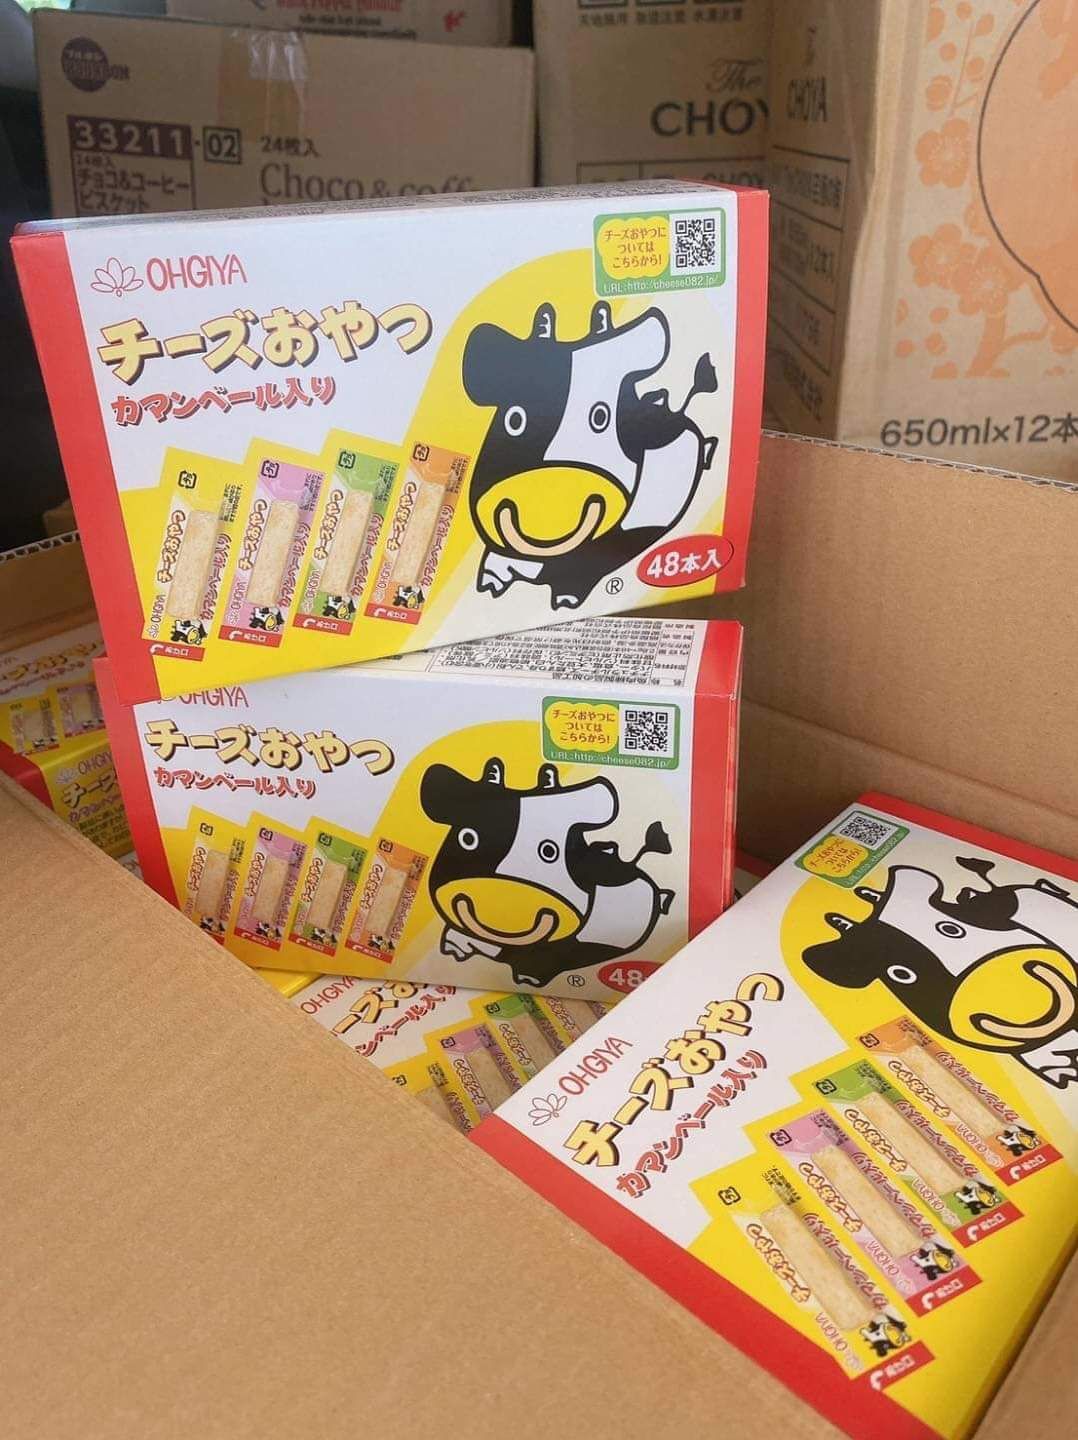 Ohgiya Cheese Sticks โอกิยะ โอกิย่า ชีสสติ๊ก ชีสวัว ชีสเด็ก ชีสทานเล่น ชีสญี่ปุ่น ขนมญี่ปุ่น ขนมติดบ้าน